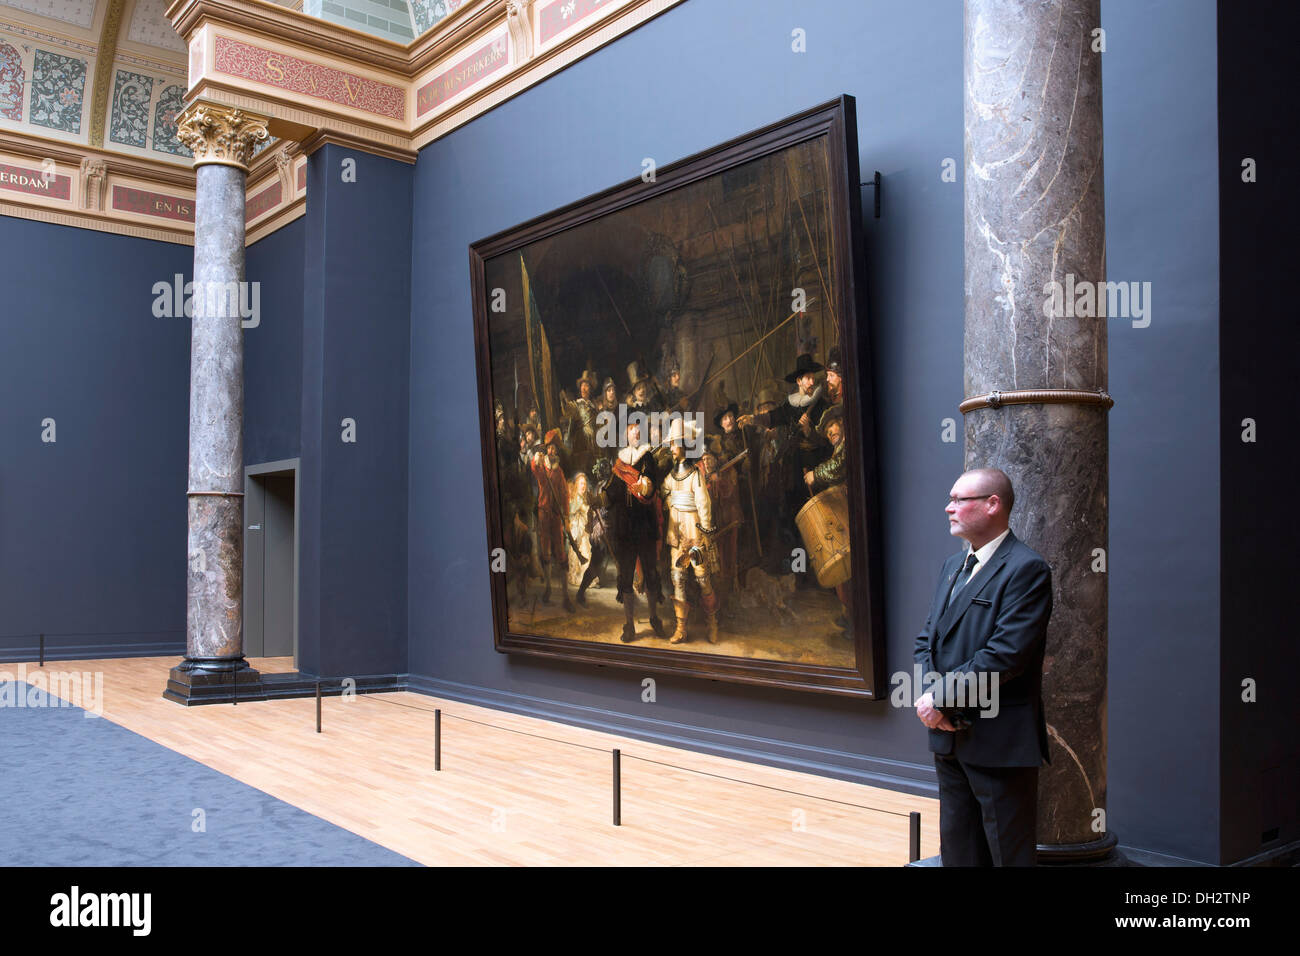 Pays-bas, Amsterdam, Rijksmuseum. La peinture de fond de Nuit ( de ronde) Rembrandt van Rijn. Garde côtière canadienne. 17e siècle. Banque D'Images